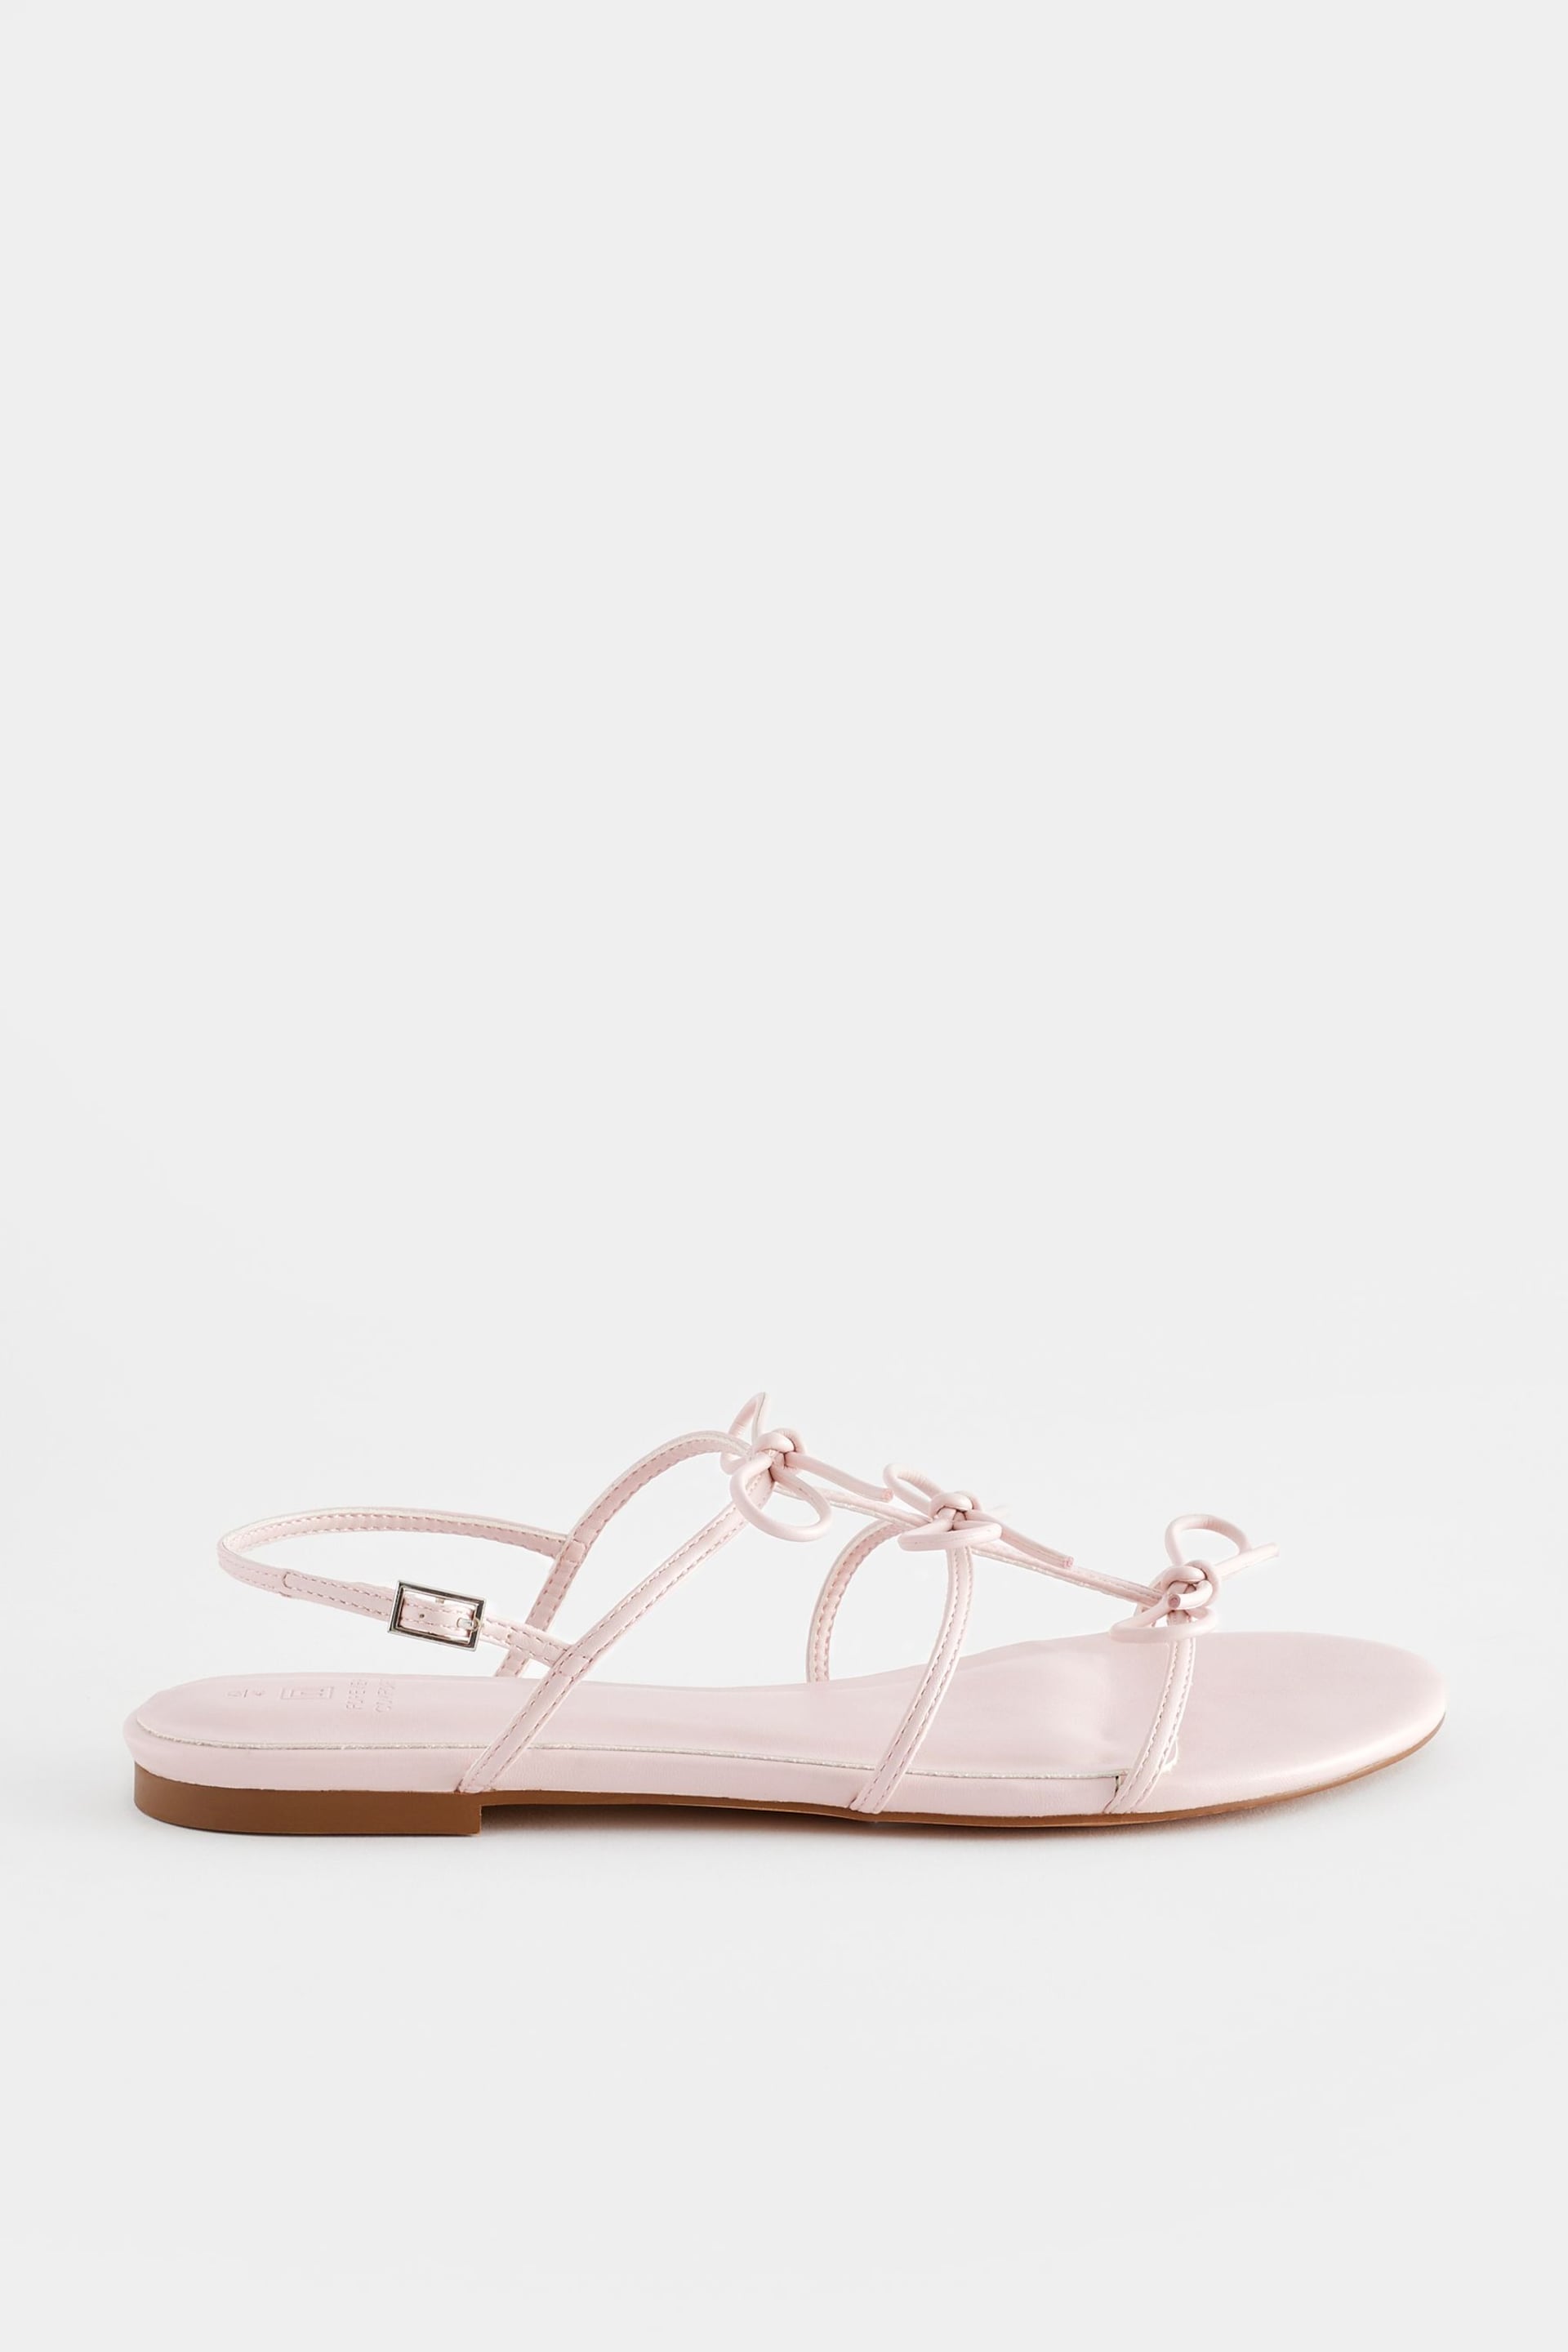 Pale Pink Regular/Wide Fit Forever Comfort ® Bow Slingback Sandals - Image 6 of 10